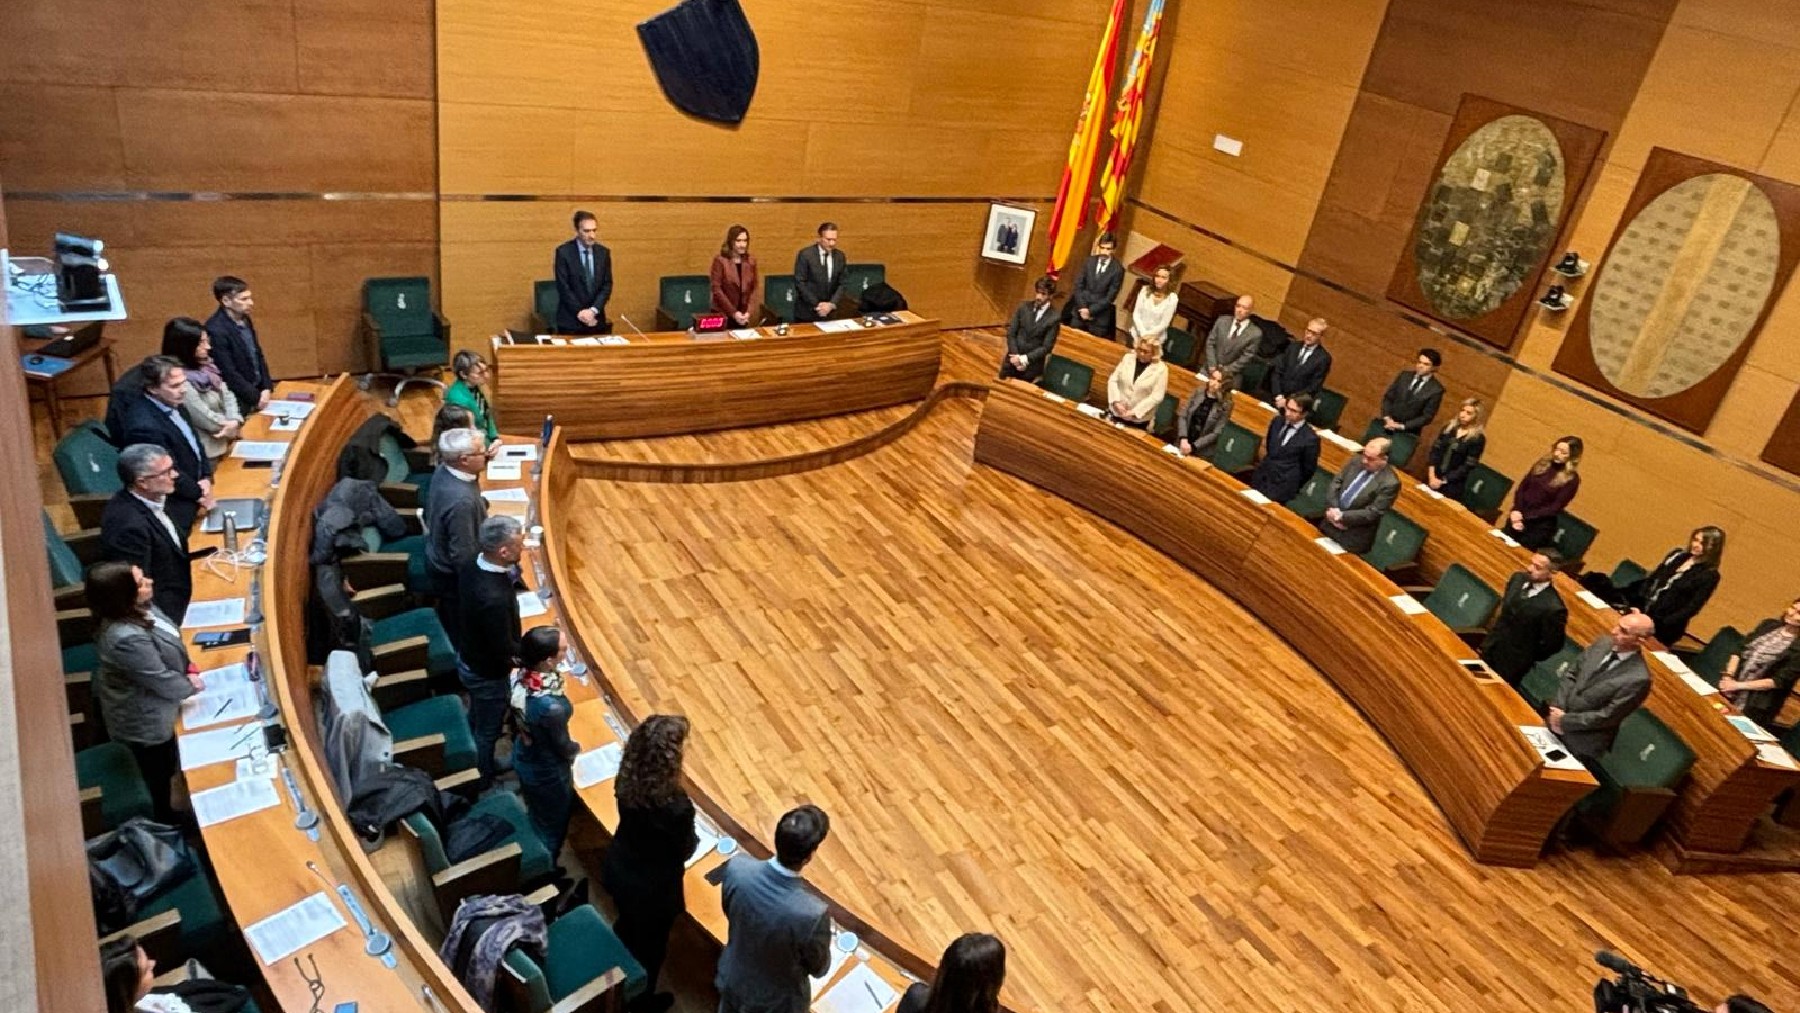 El pleno del Ayuntamiento de Valencia muestra su respeto a las víctimas con un minuto de silencio.